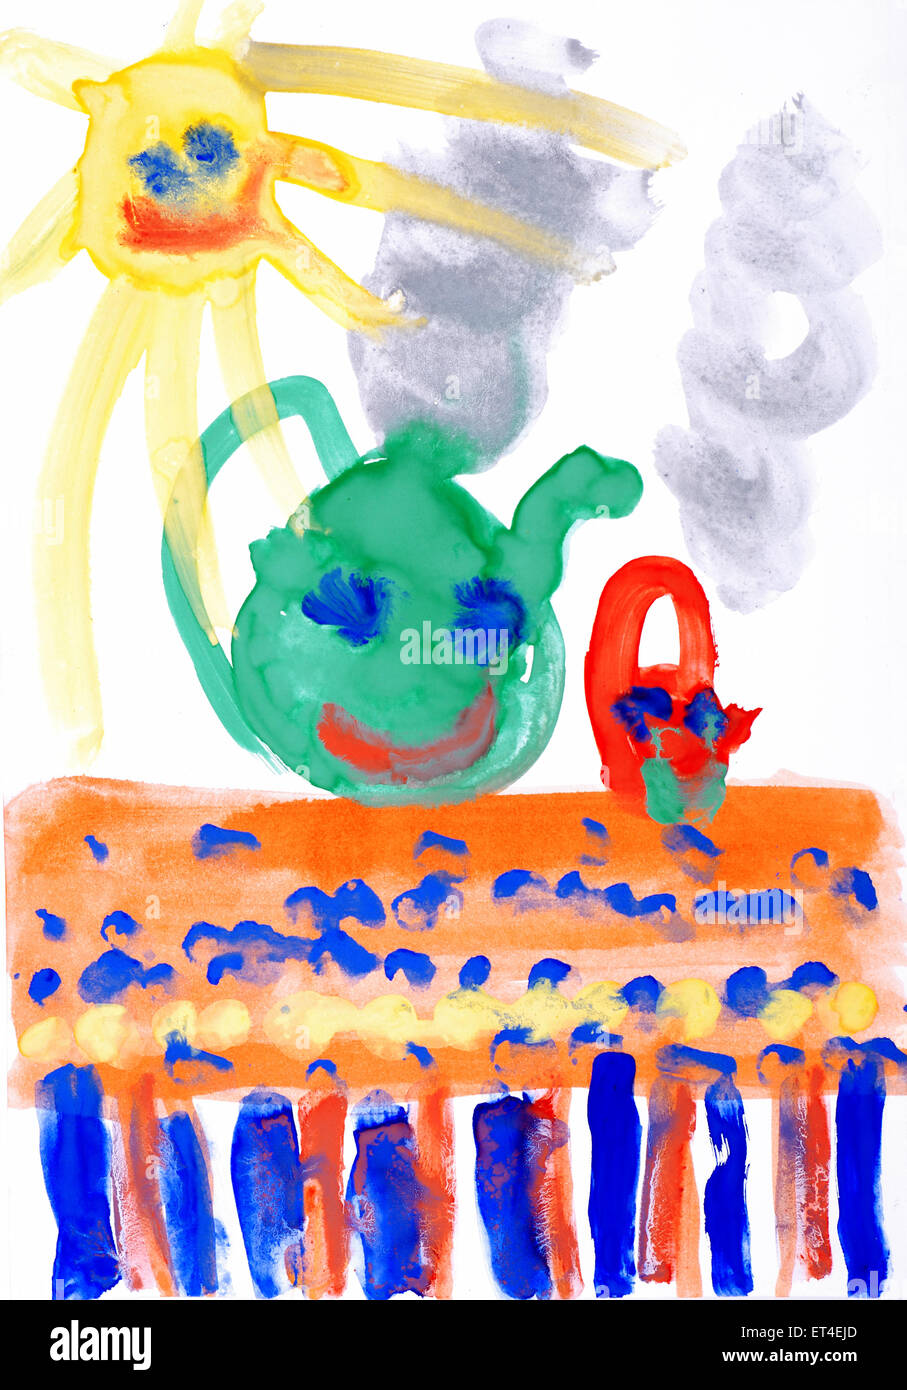 Kinder Zeichnung Farbe Wasserfarben auf Papier. Lächelnde Sonne, Tisch, Tee. Stockfoto